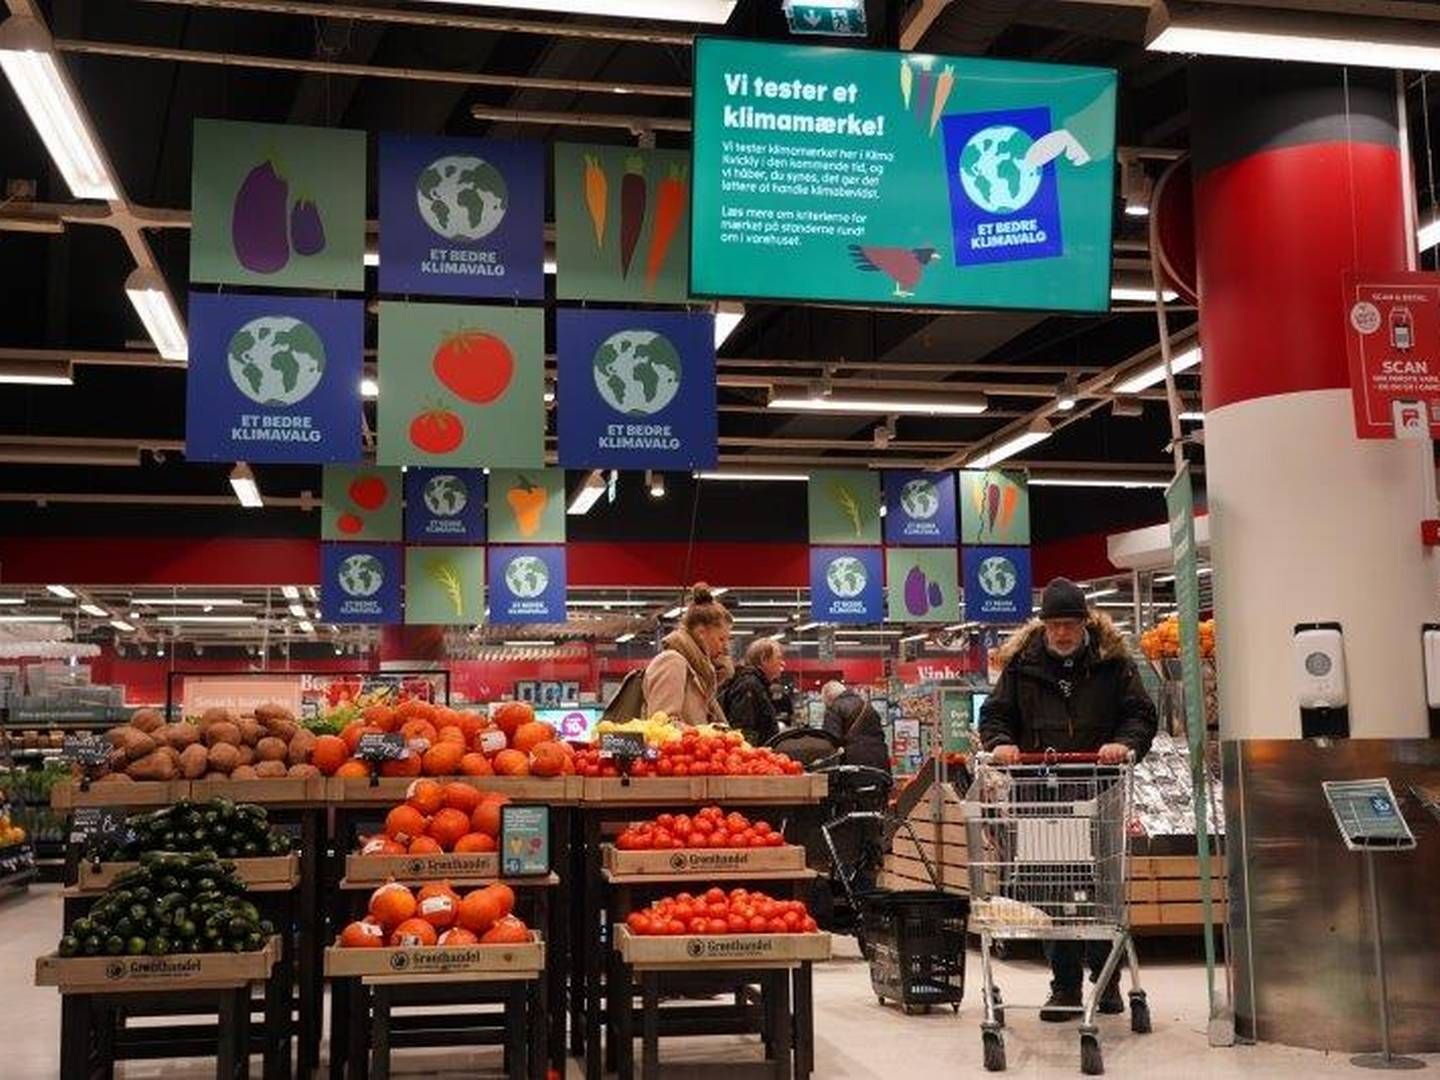 Julesalget lettede ikke presset på dagligvarebutikkerne, viser tal fra Danmarks Statistik. | Foto: Coop